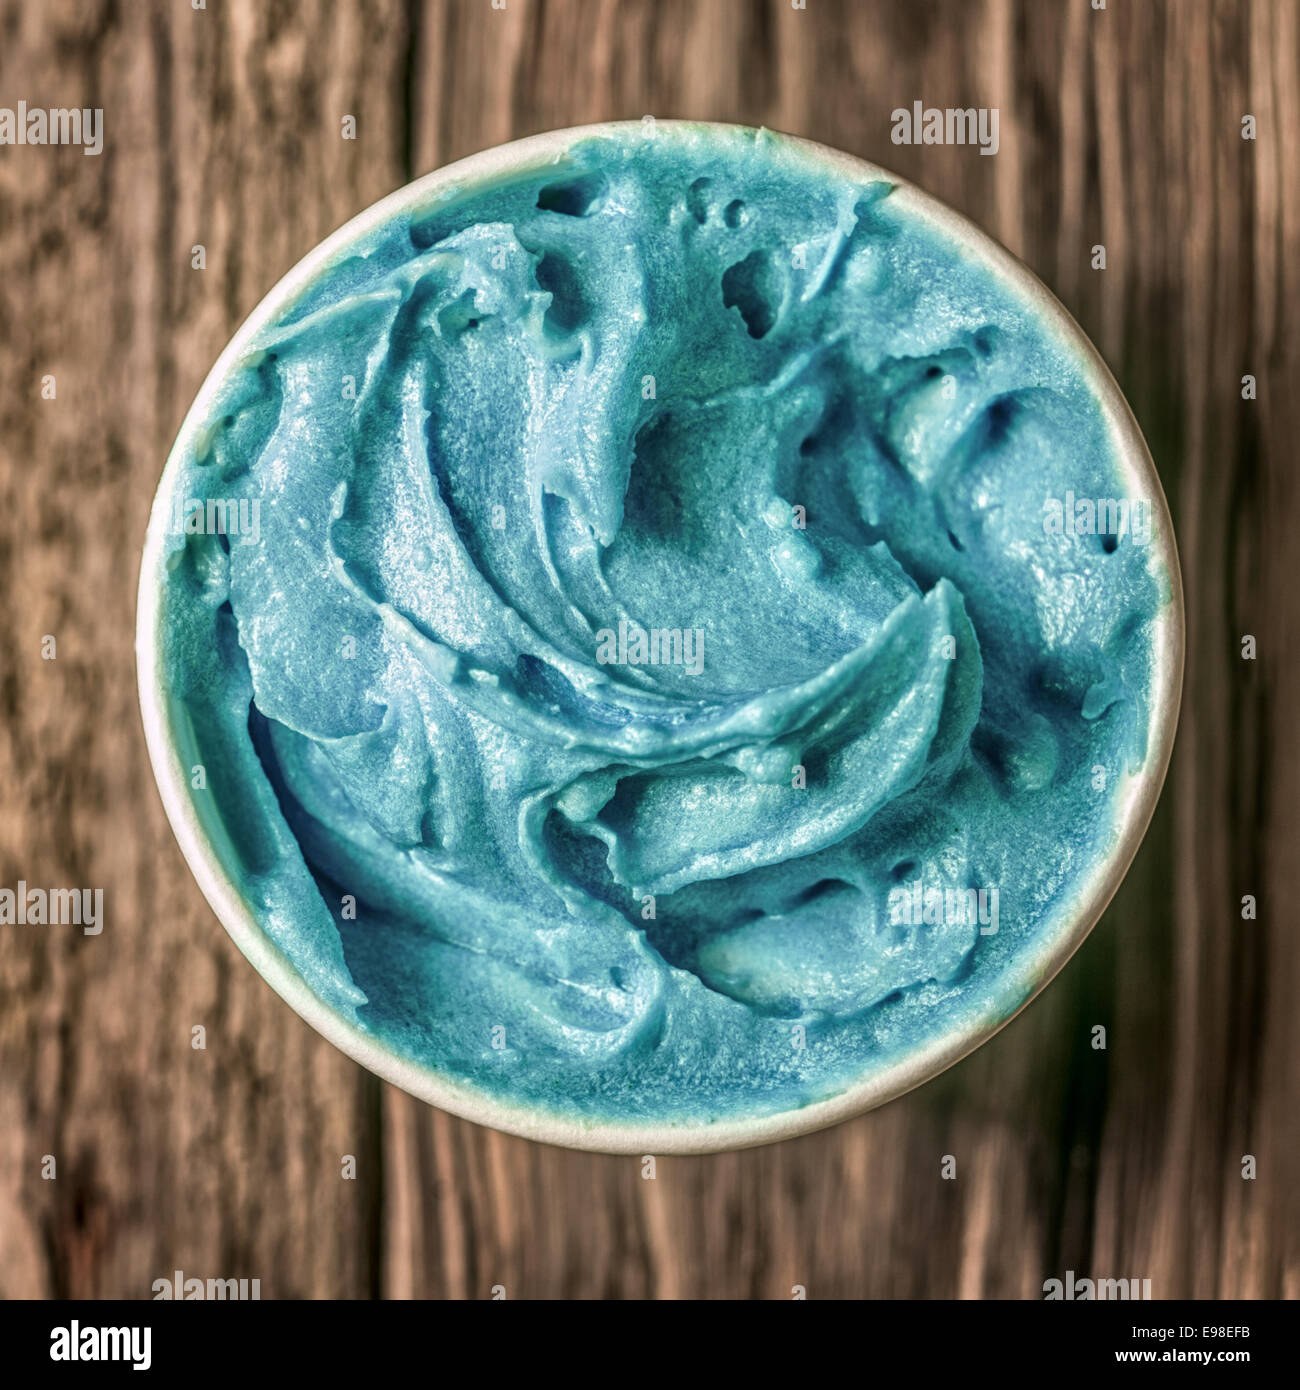 Azul turquesa refrescantes helados en una bañera para llevar parado sobre una antigua mesa de madera con textura, vista aérea en formato cuadrado Foto de stock